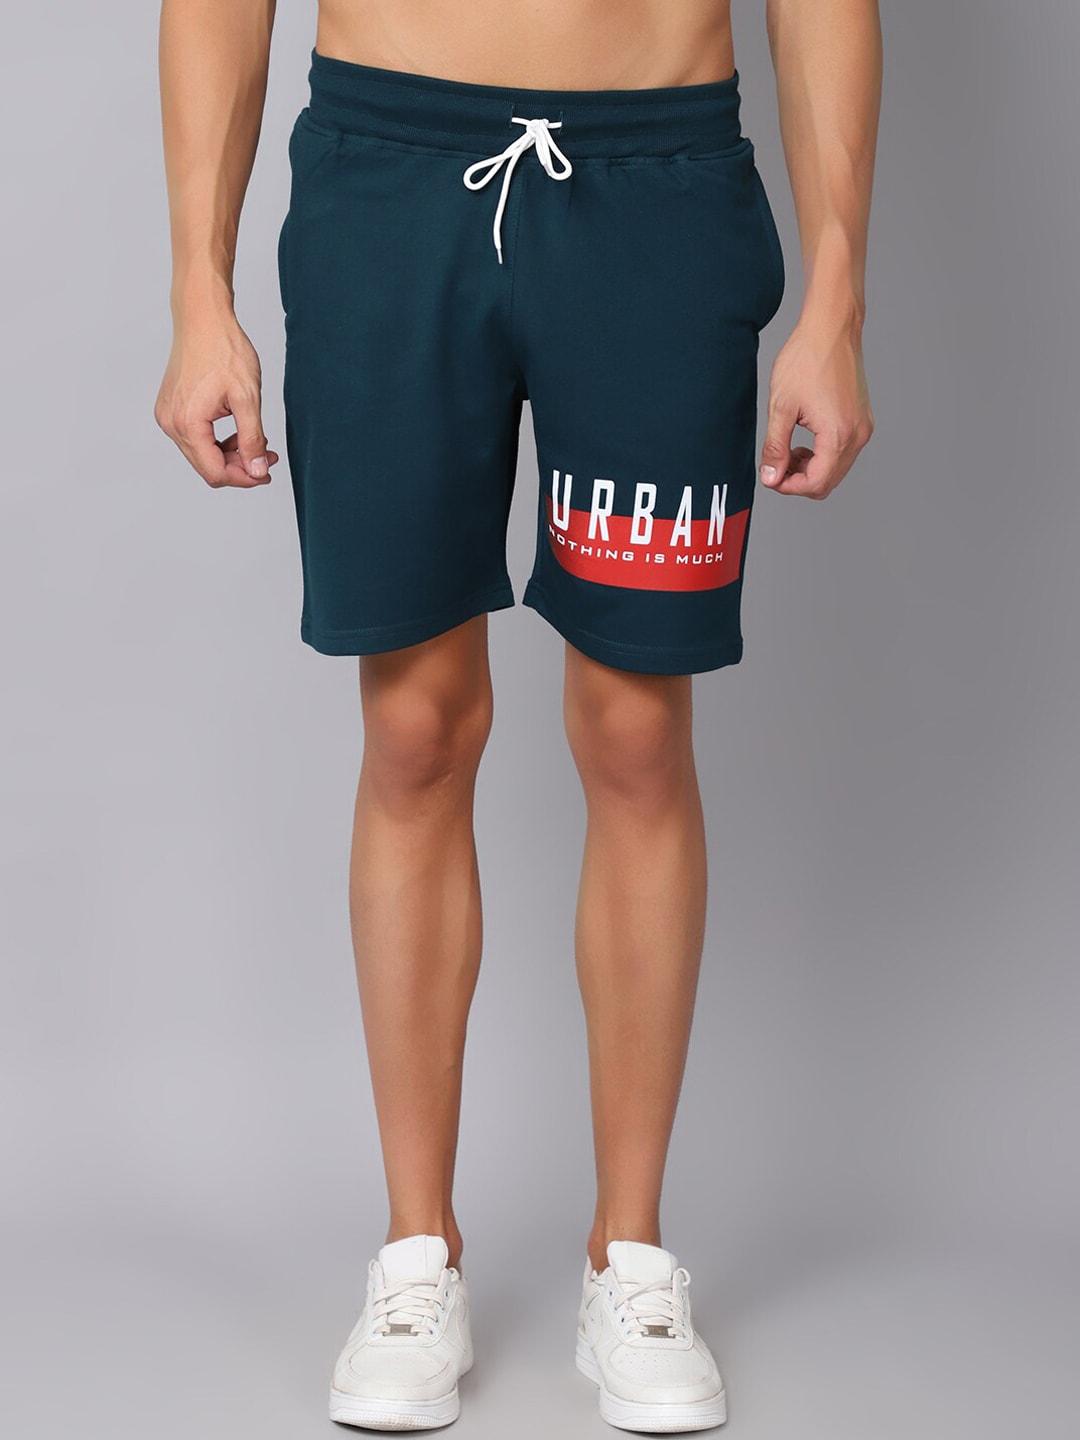 rodamo men teal printed slim fit shorts